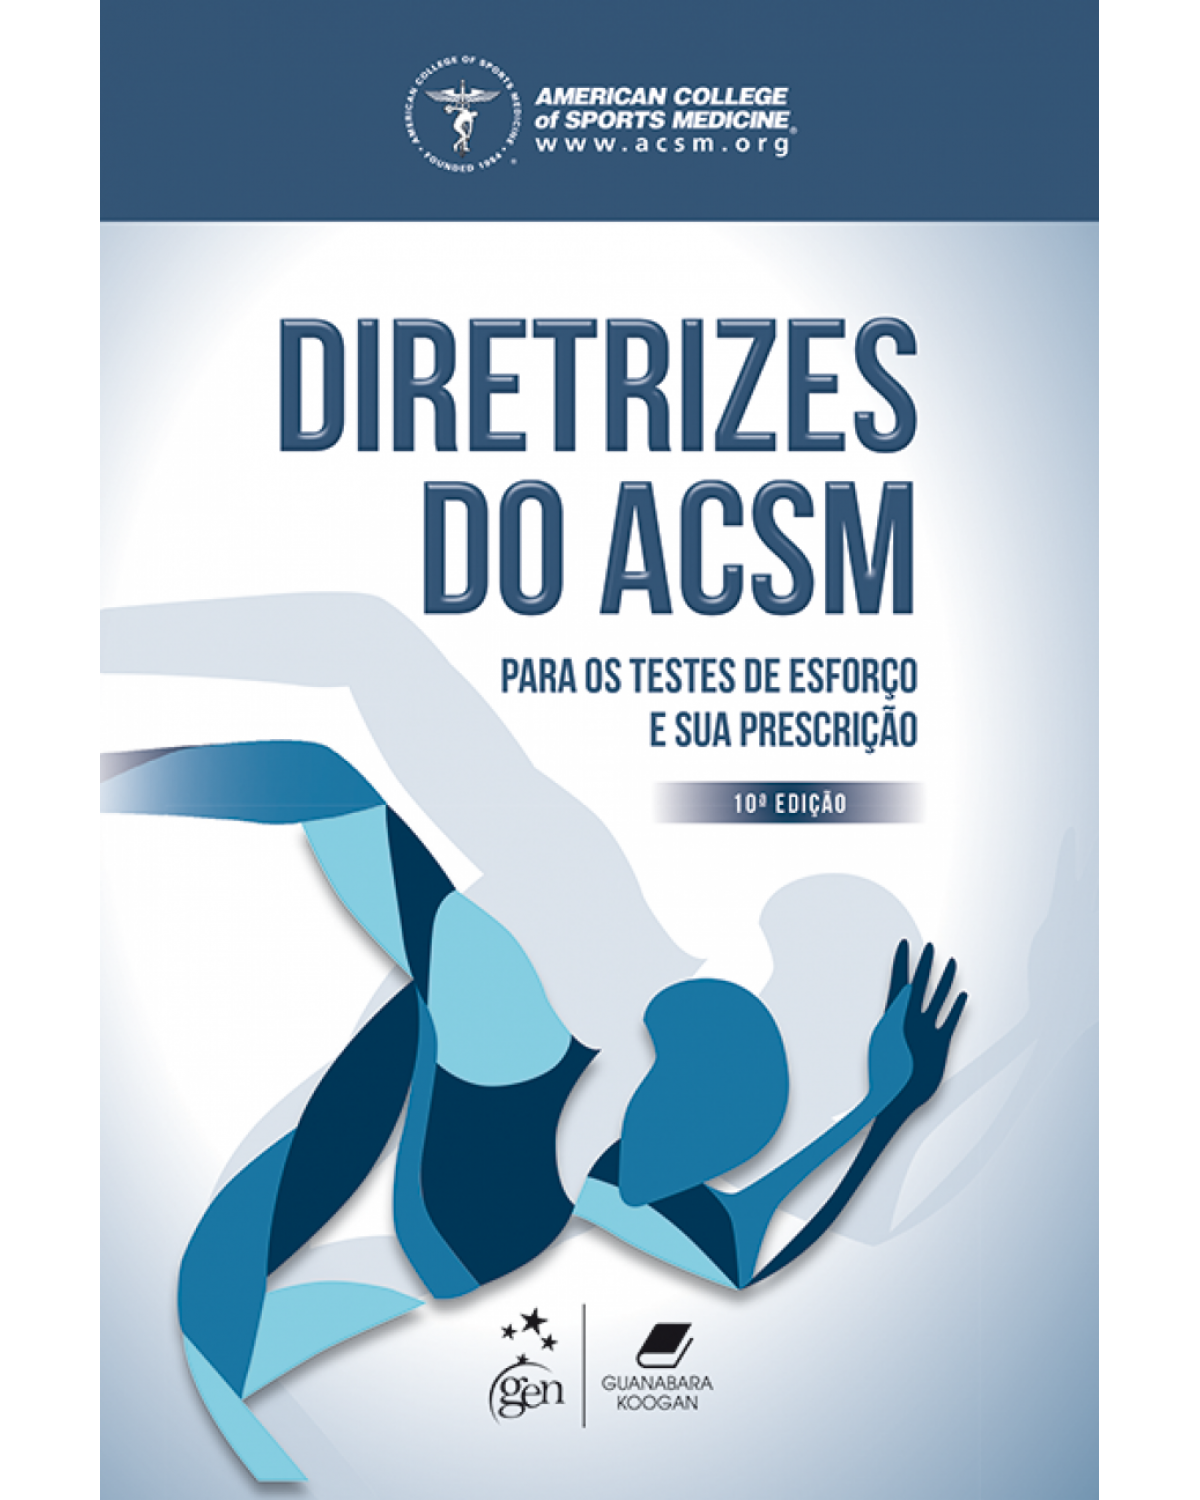 Diretrizes do ACSM para os testes de esforço e sua prescrição - 10ª Edição | 2018